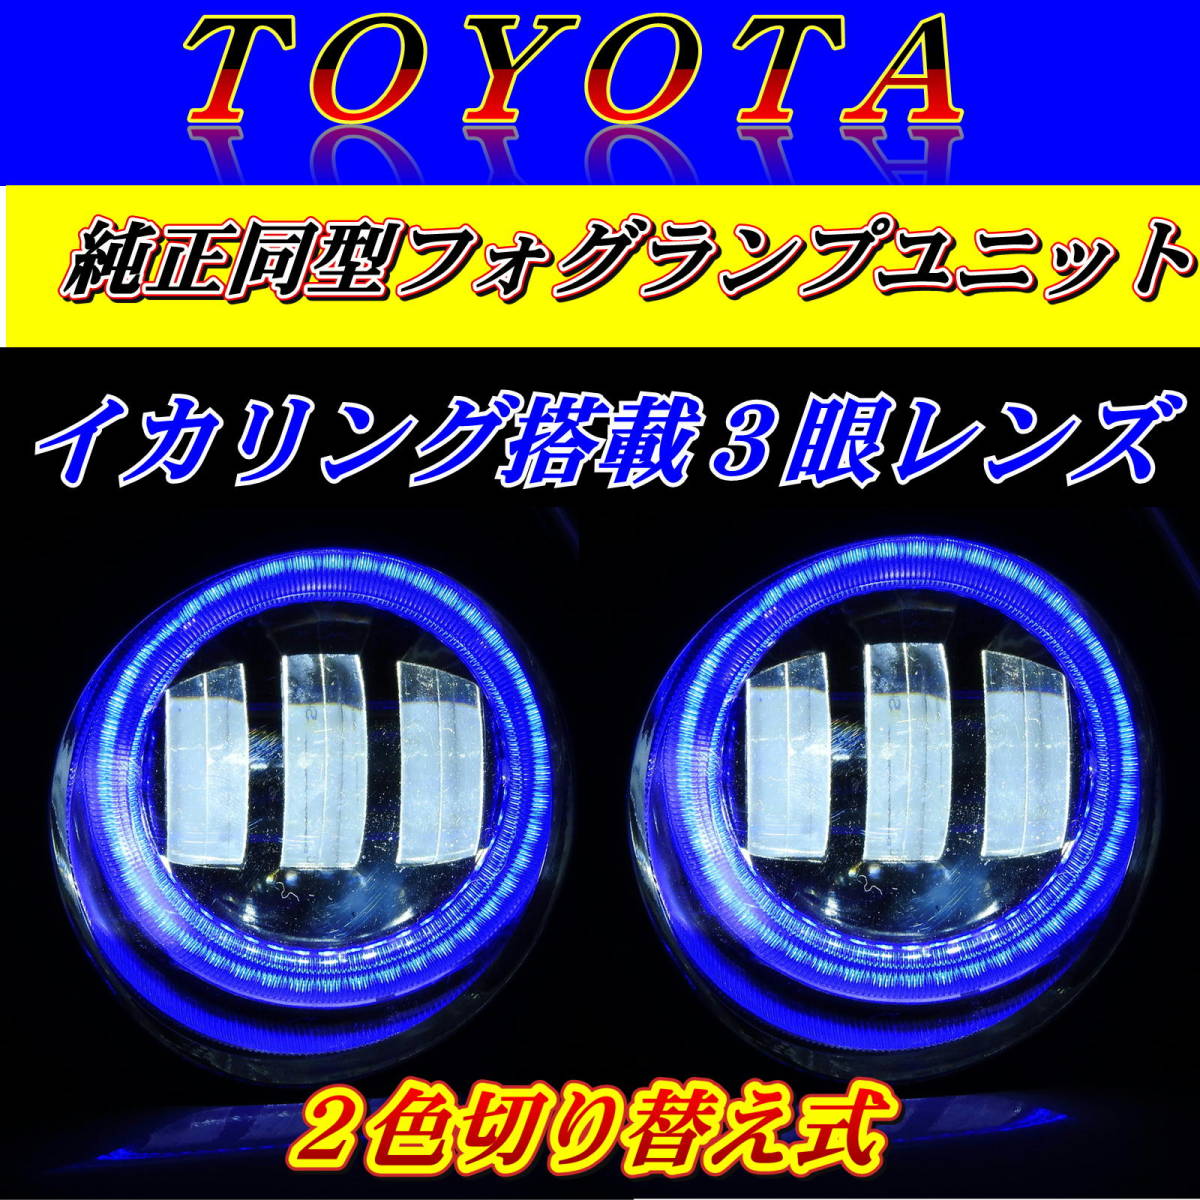 トヨタ没用 LEDフォグランプ ユニット アルファード/ヴェルファイア/プリウス/イカリング搭載 2色切り替え式_画像2